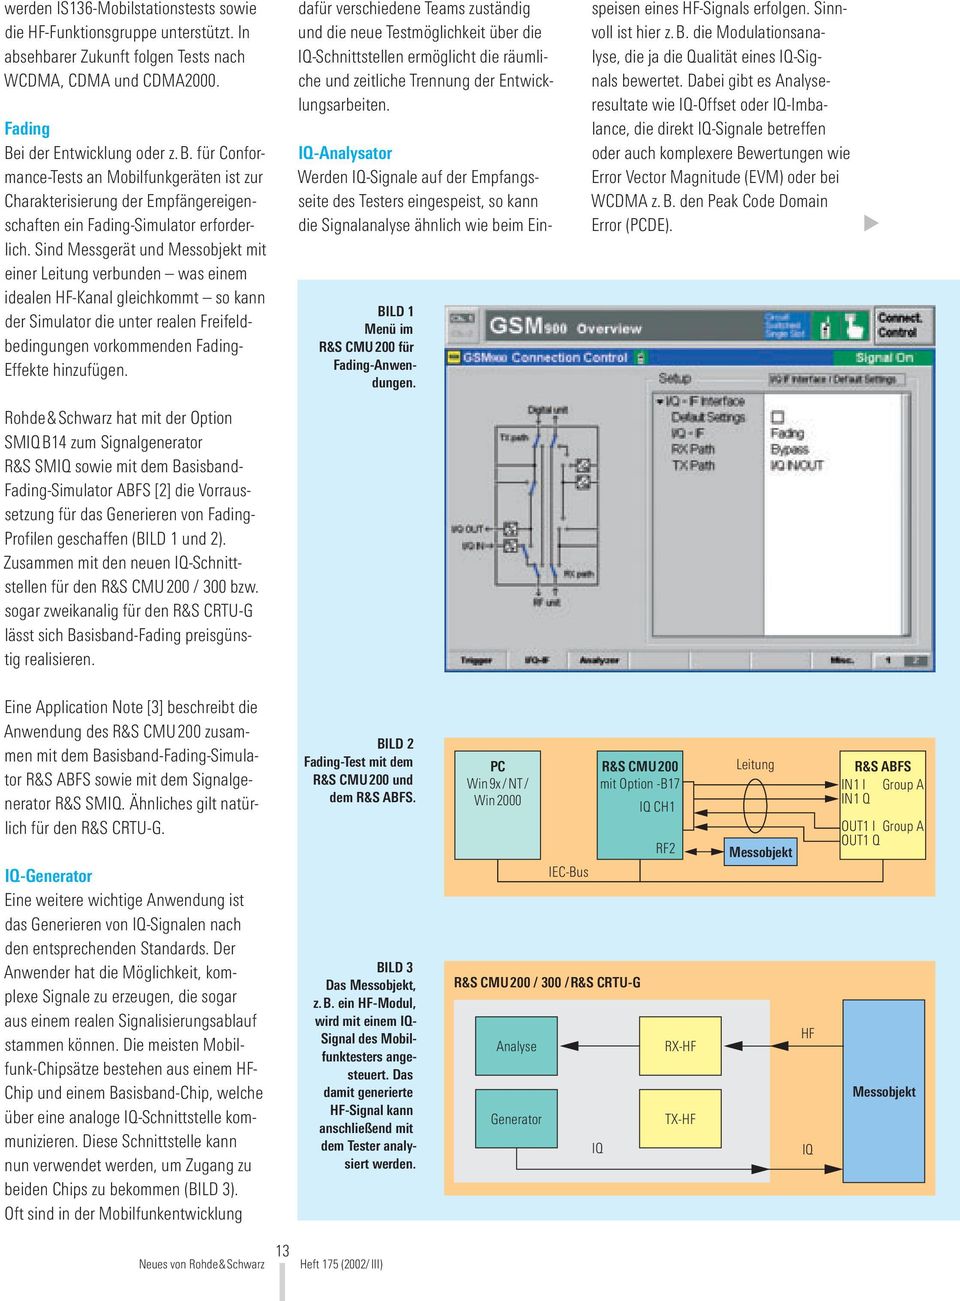 Rohde&Schwarz hat mit der Option SMIQB14 zum Signalgenerator R&S SMIQ sowie mit dem Basisband- Fading-Simulator ABFS [2] die Vorraussetzung für das Generieren von Fading- Profilen geschaffen (BILD 1